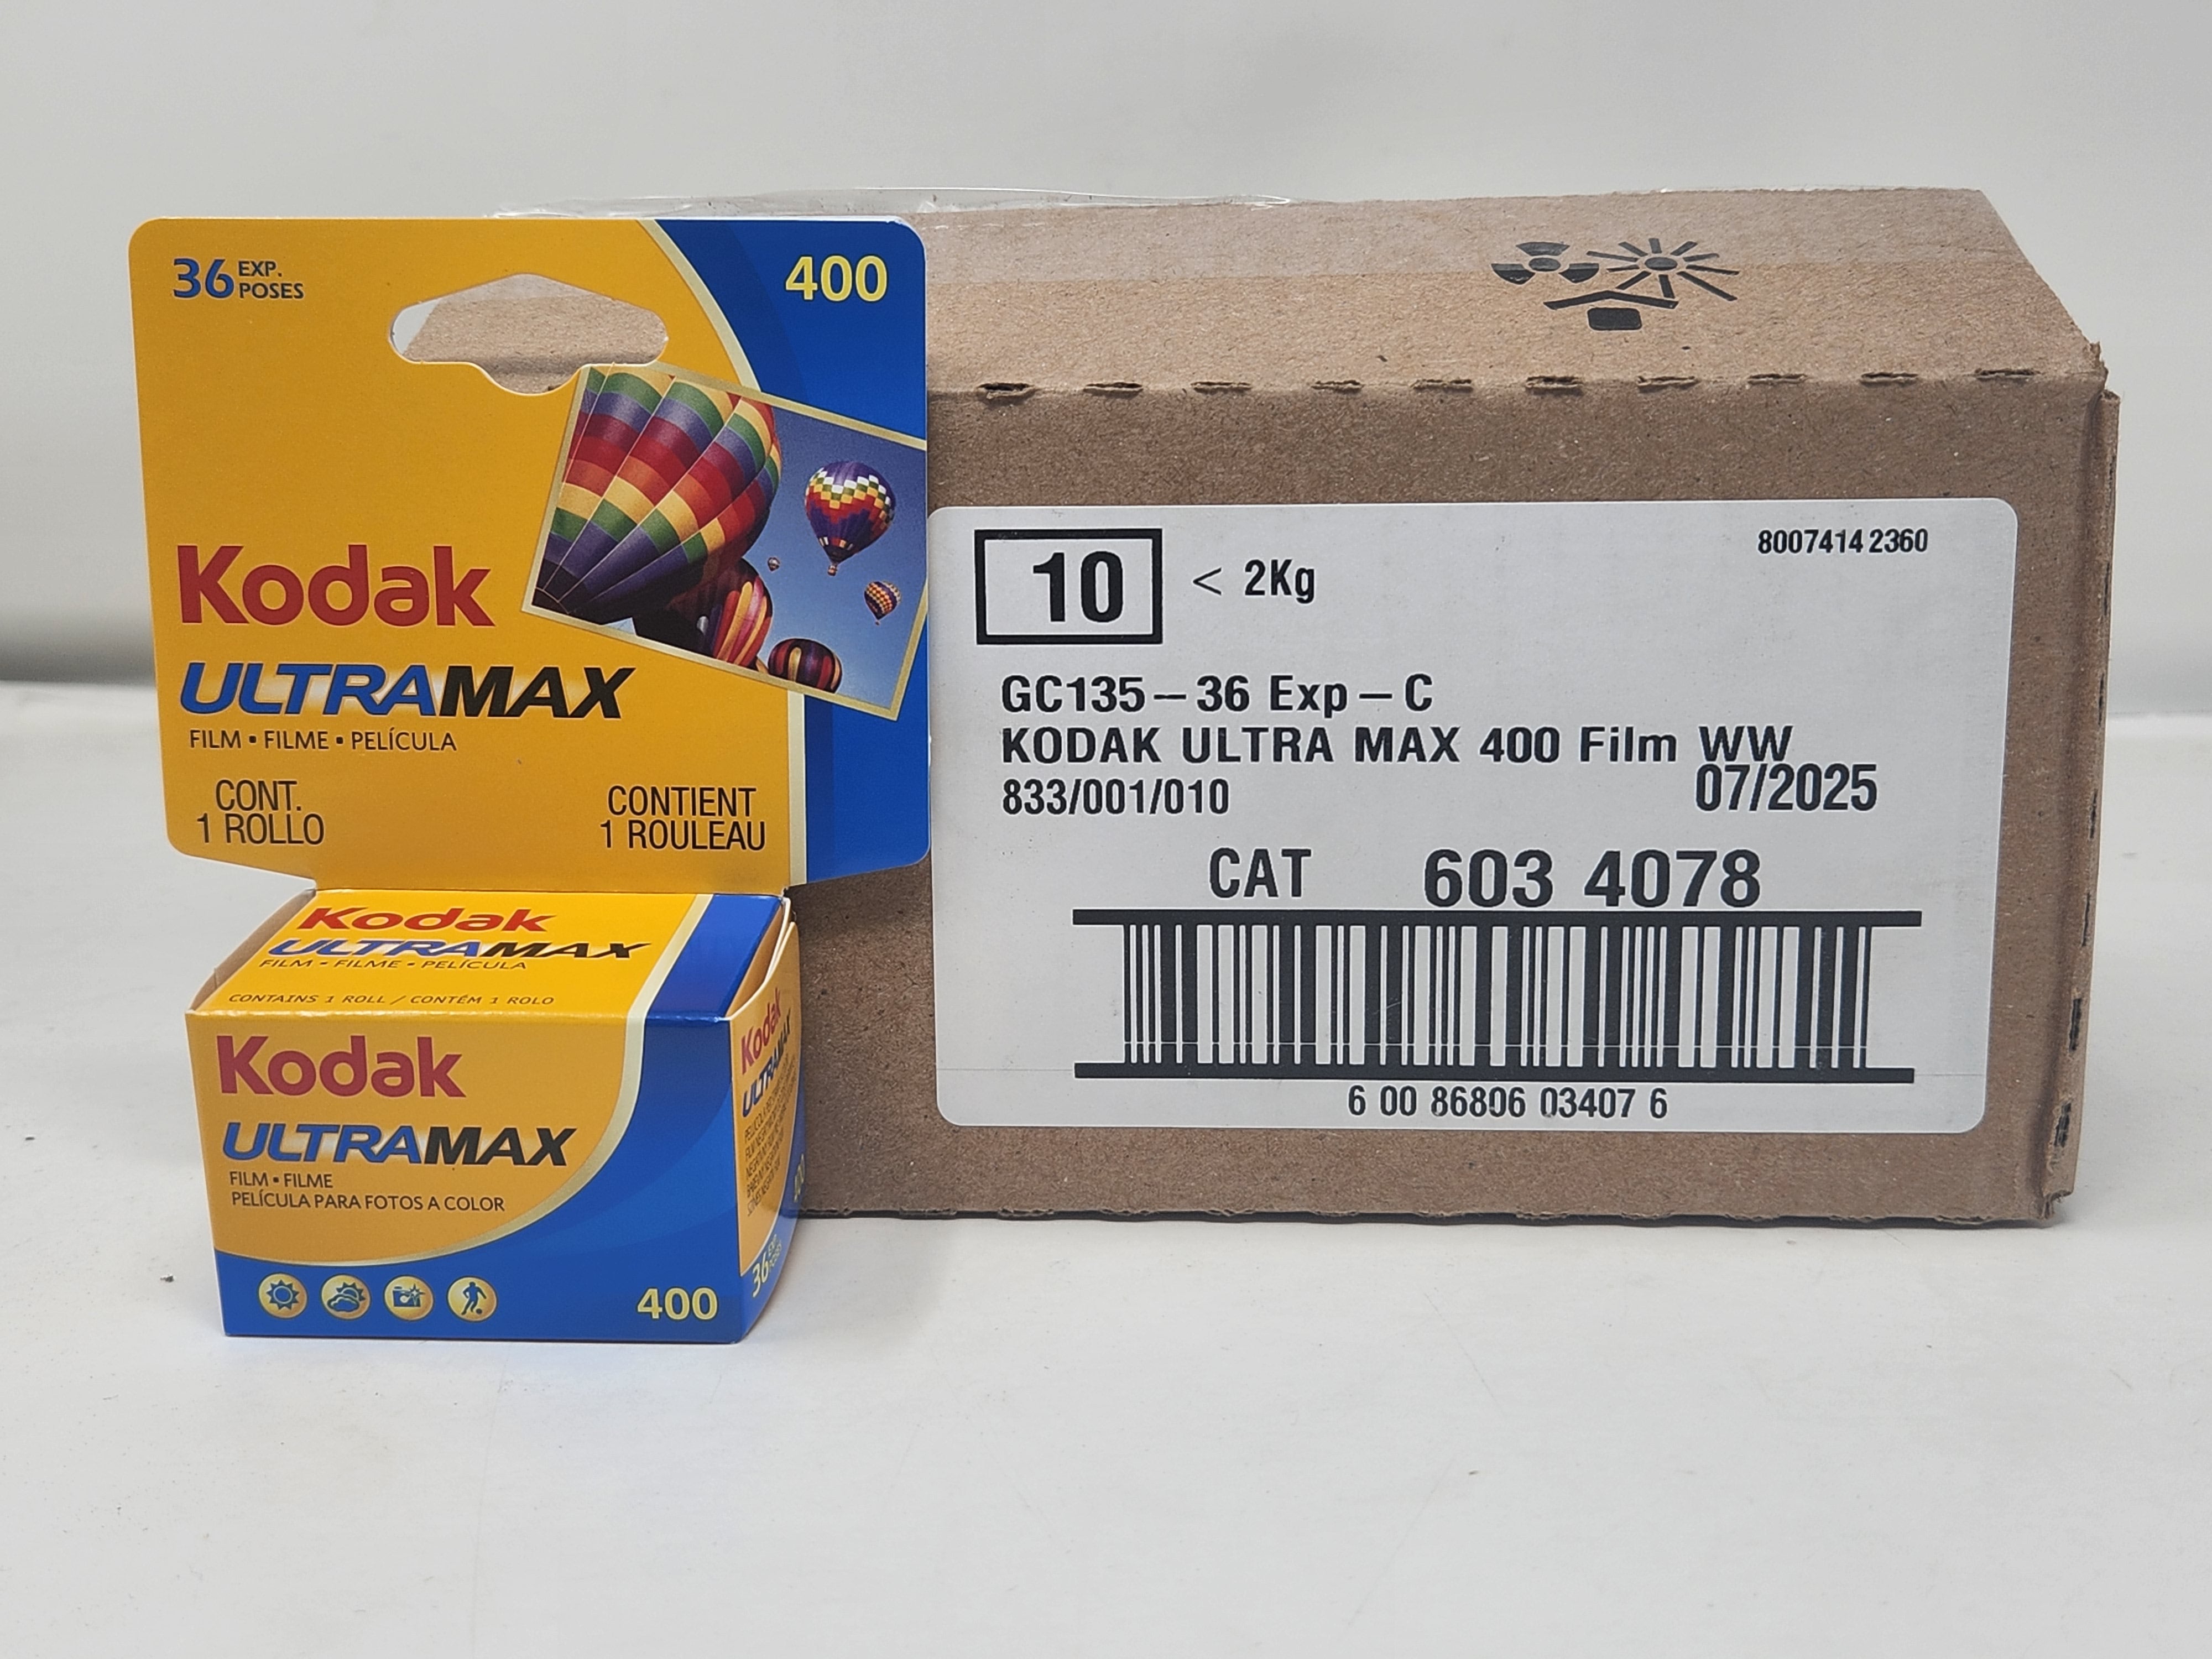 Kodak Ultramax GC-135-36 Carded (400) 6034078 exp 07/2025